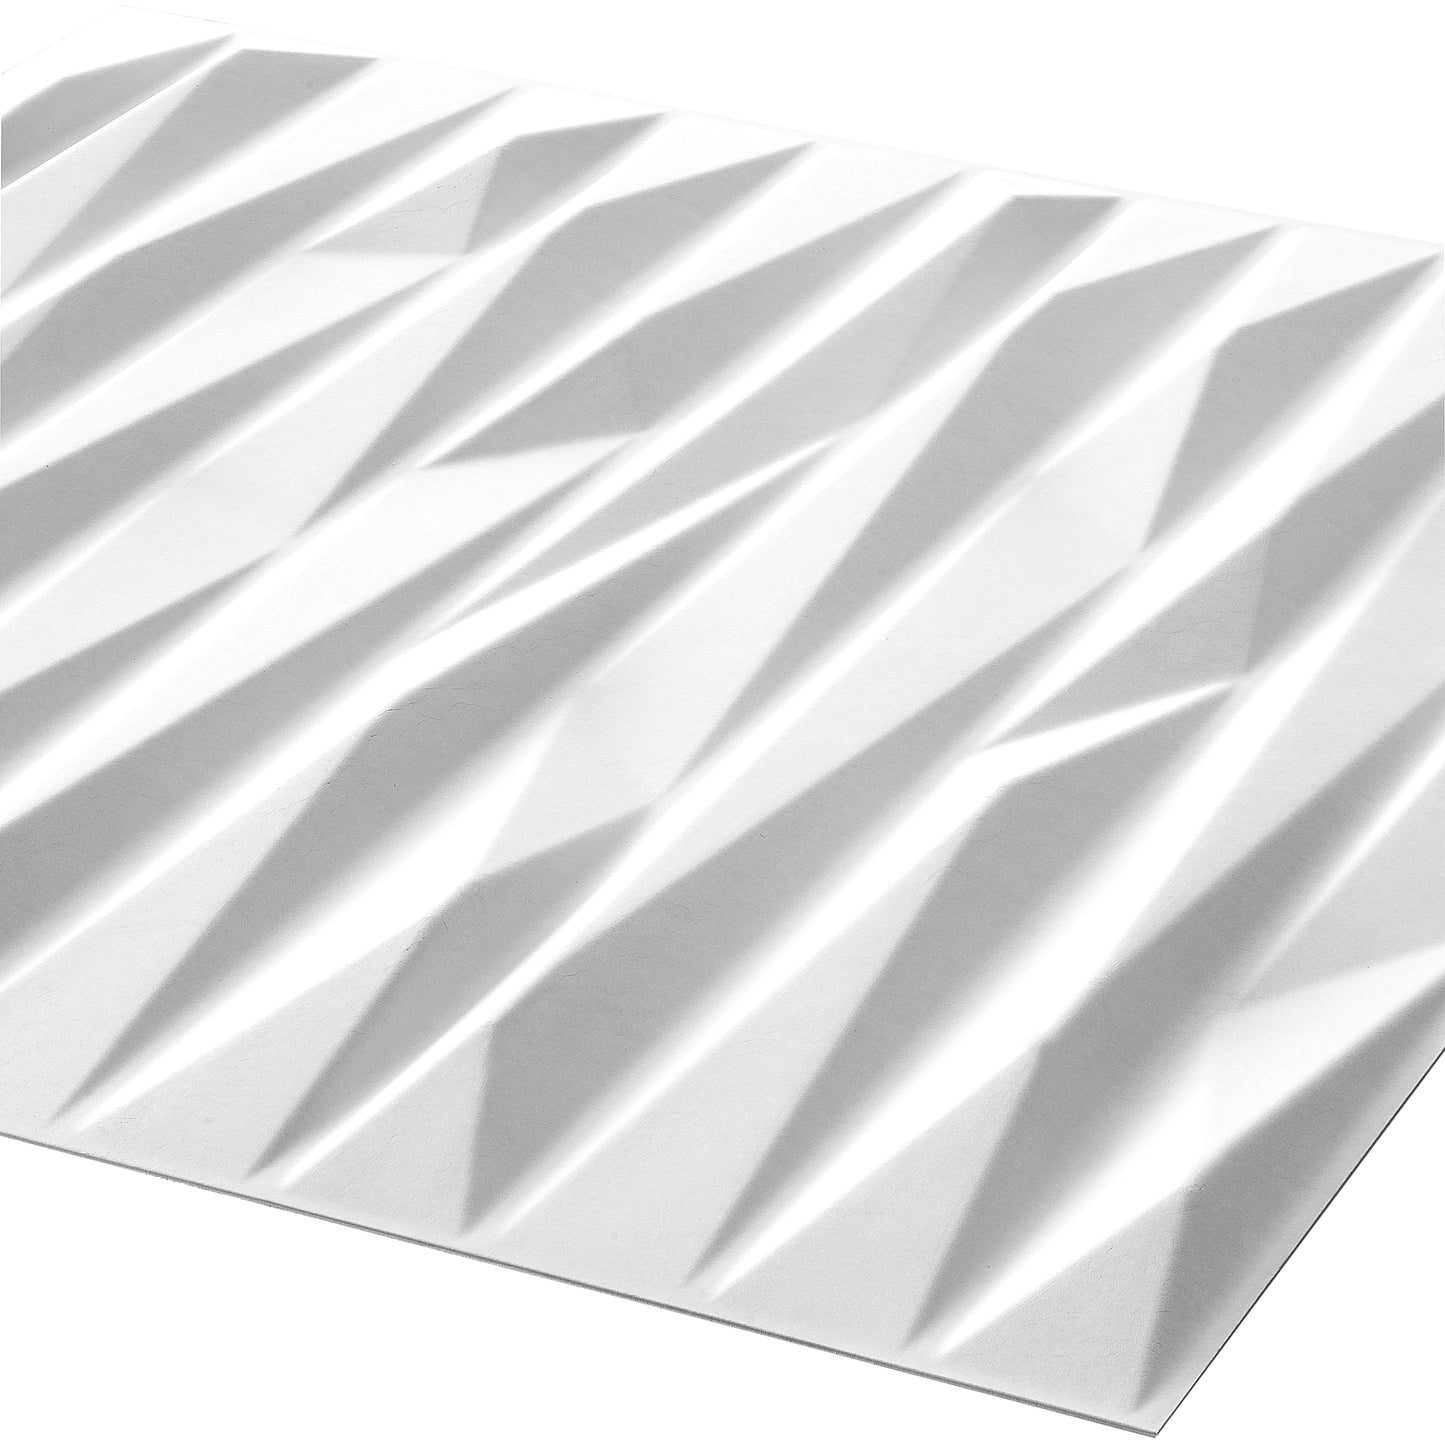 Valeria design - 3D Wall Panels